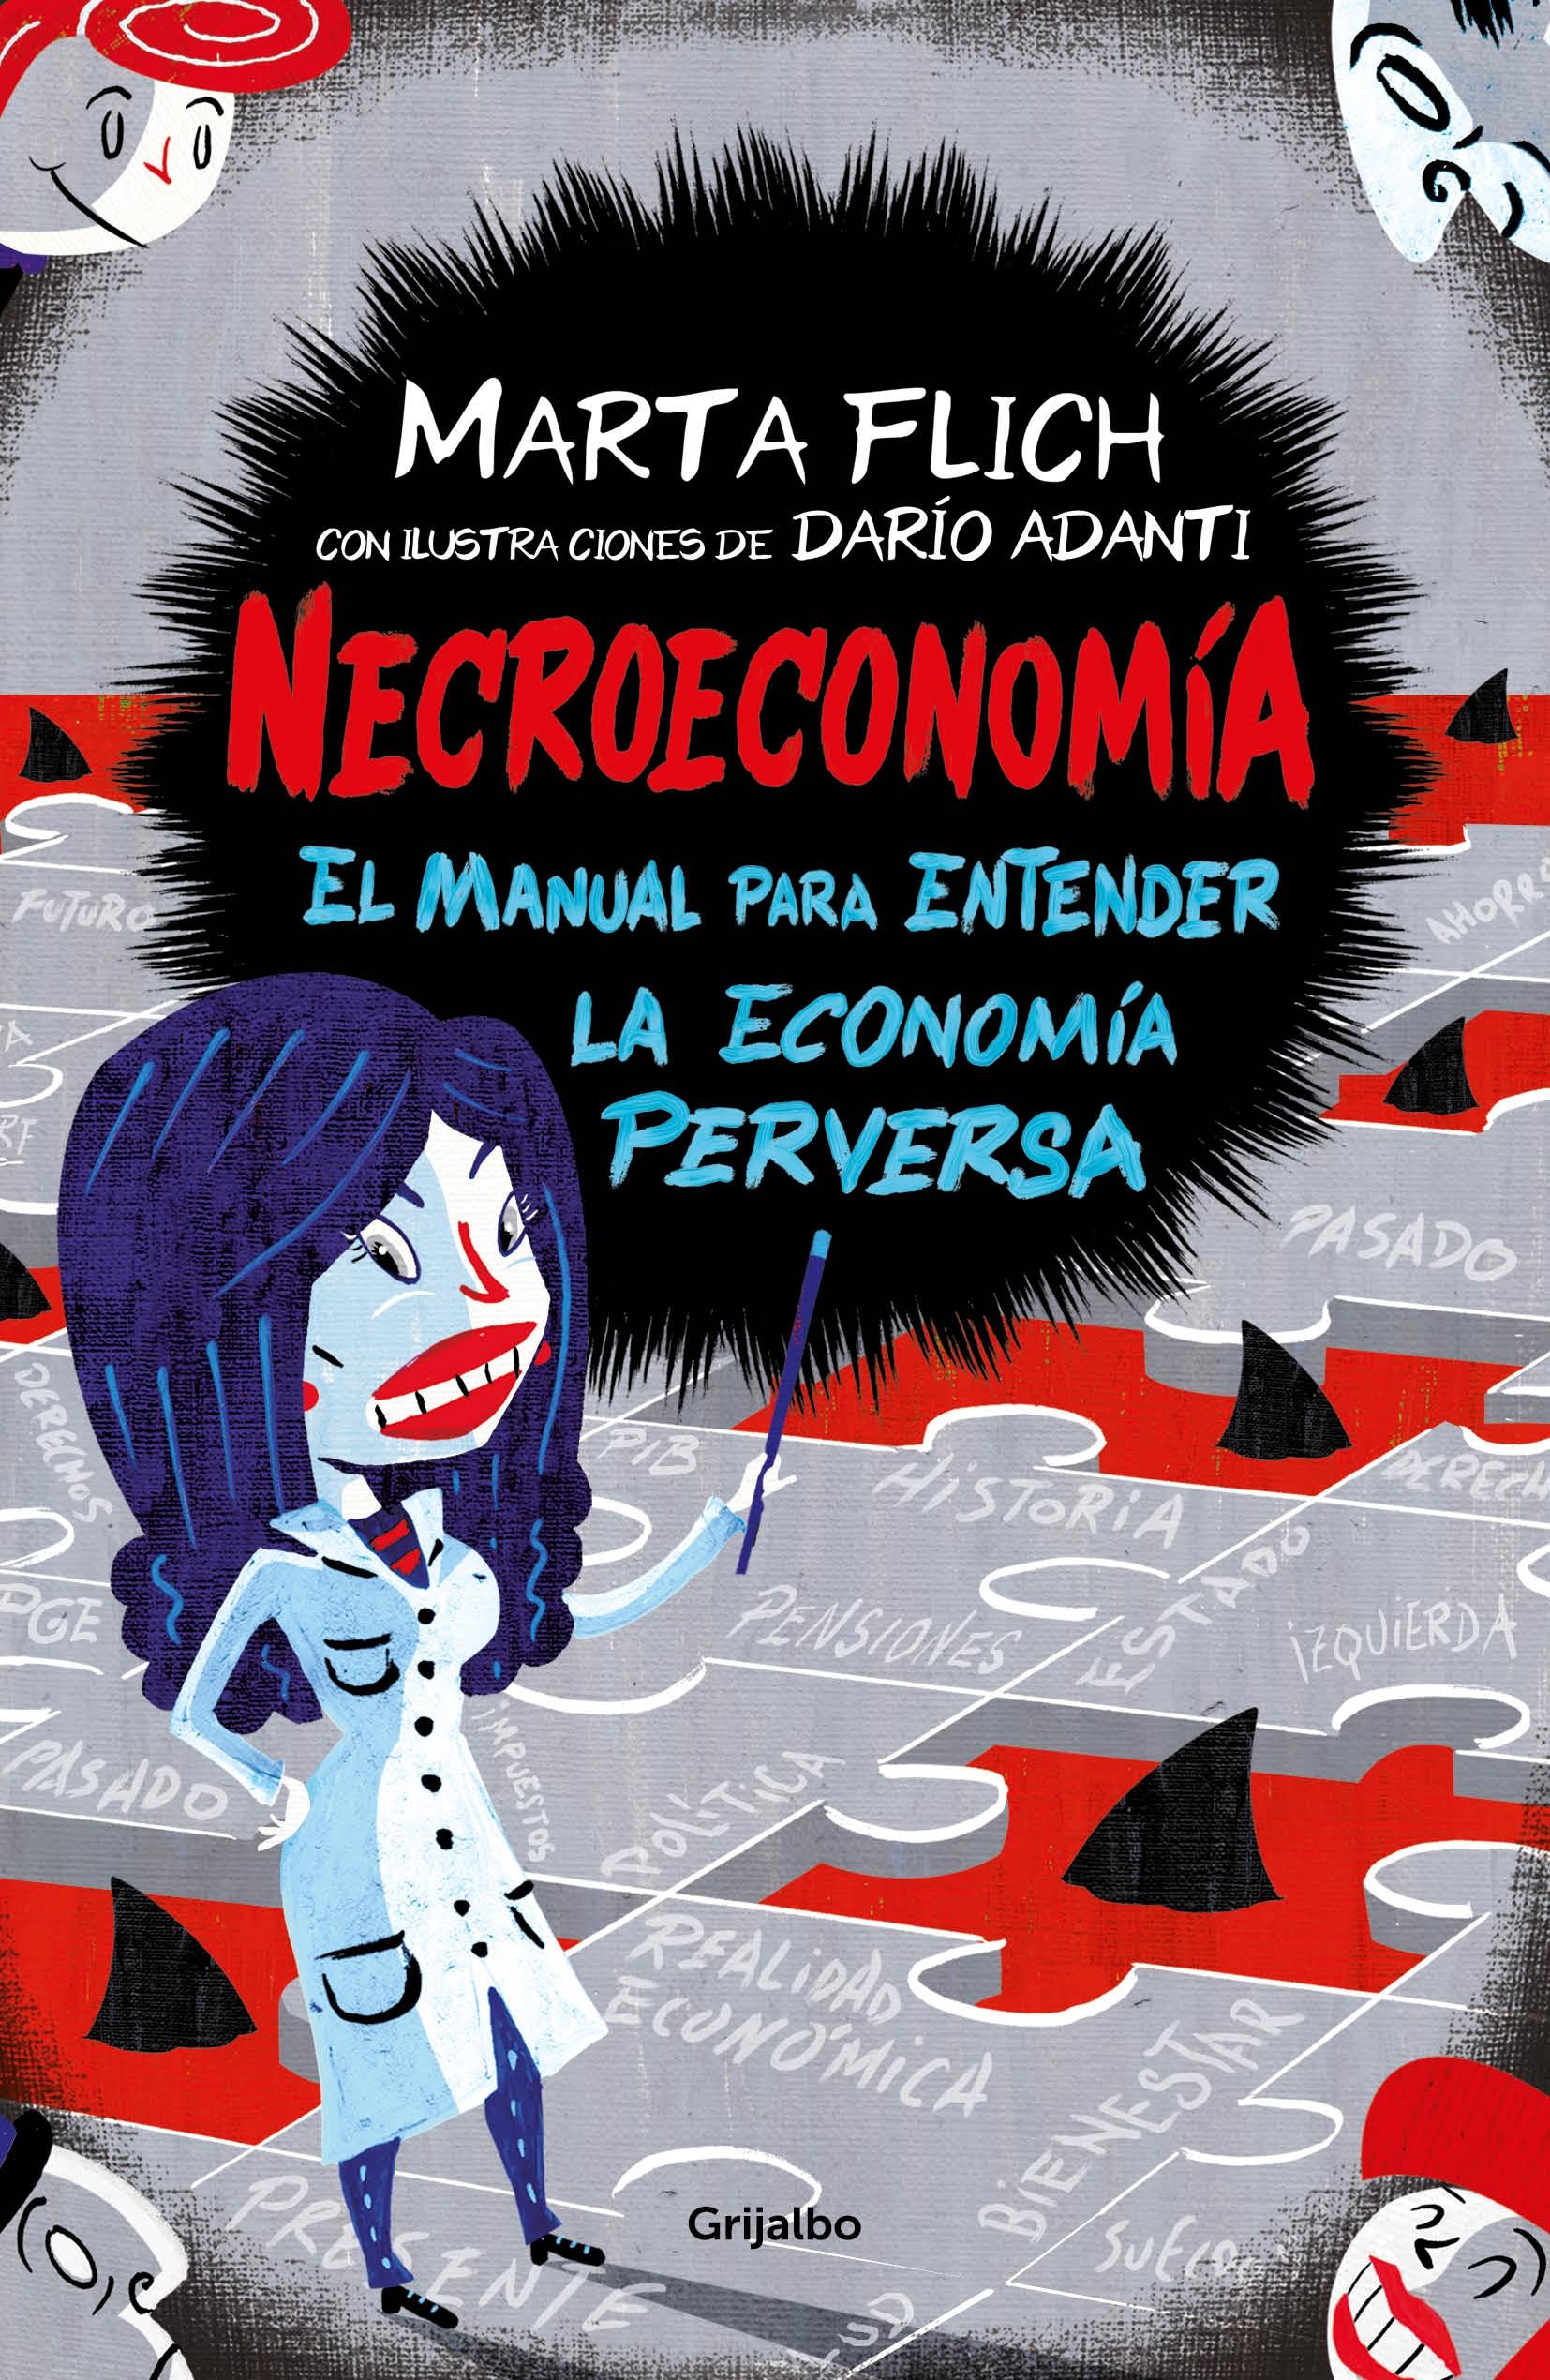 Necroeconomía "El Manual para Entender la Economía Perversa"